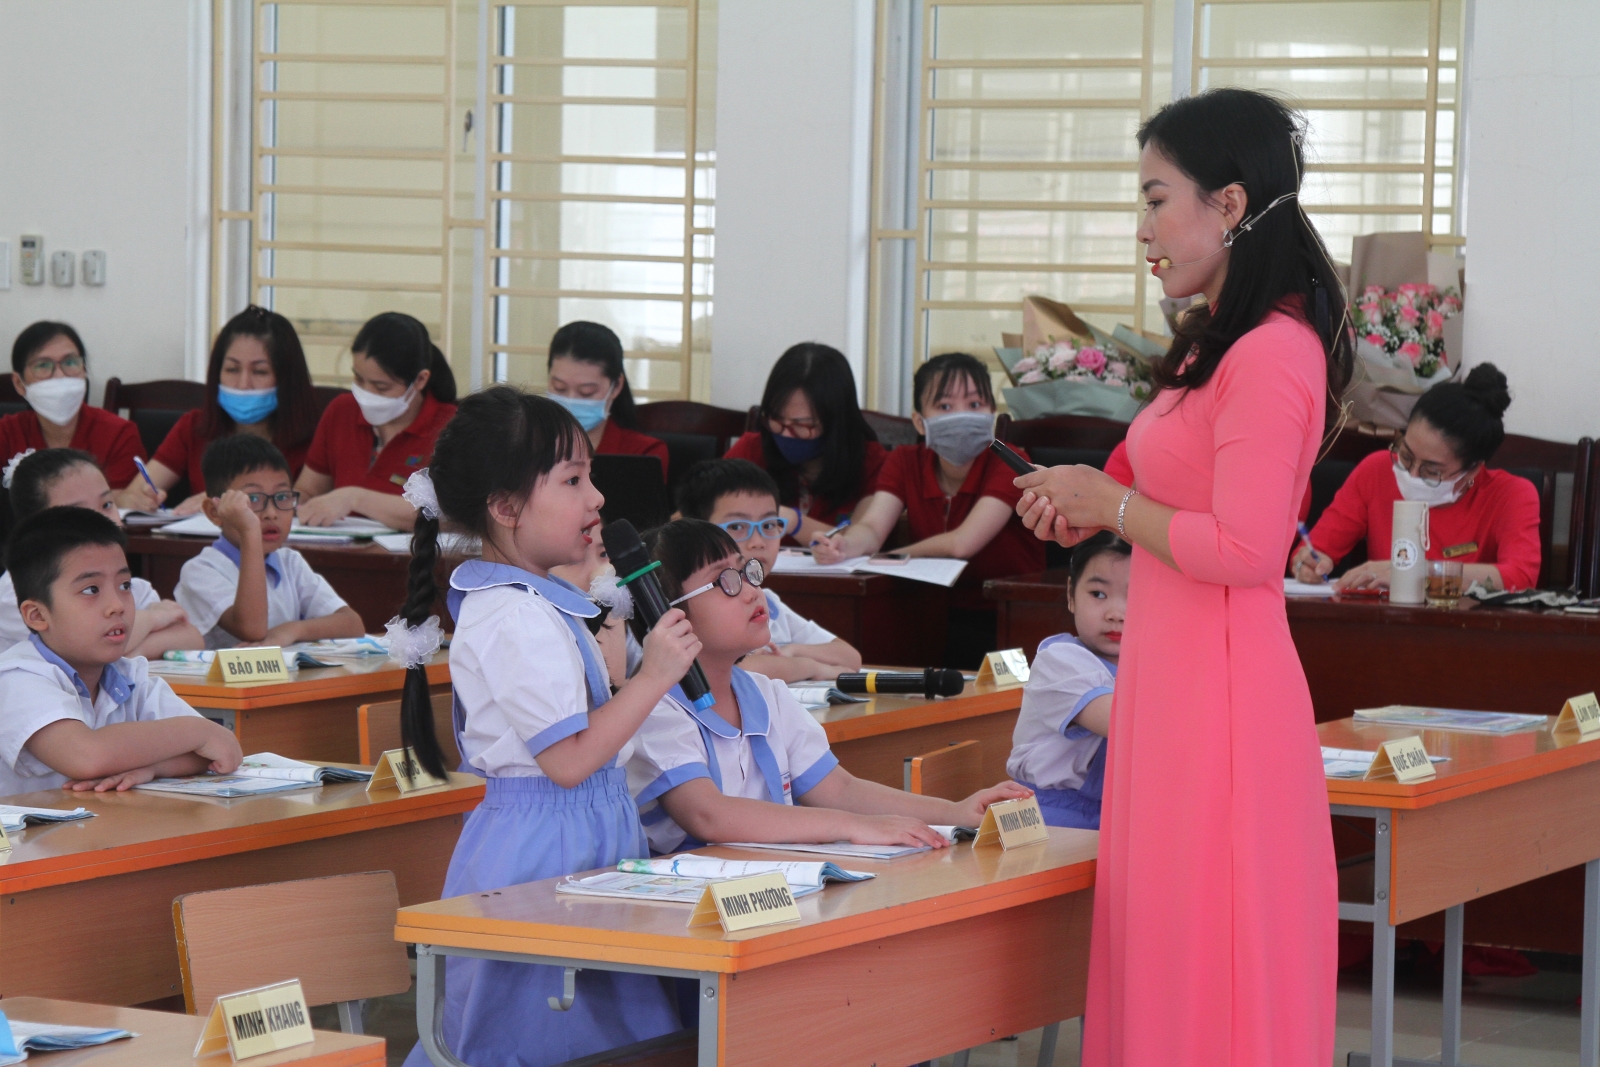  Hải Phòng: Để có những bài học môn Tiếng Việt lớp 2 bổ ích